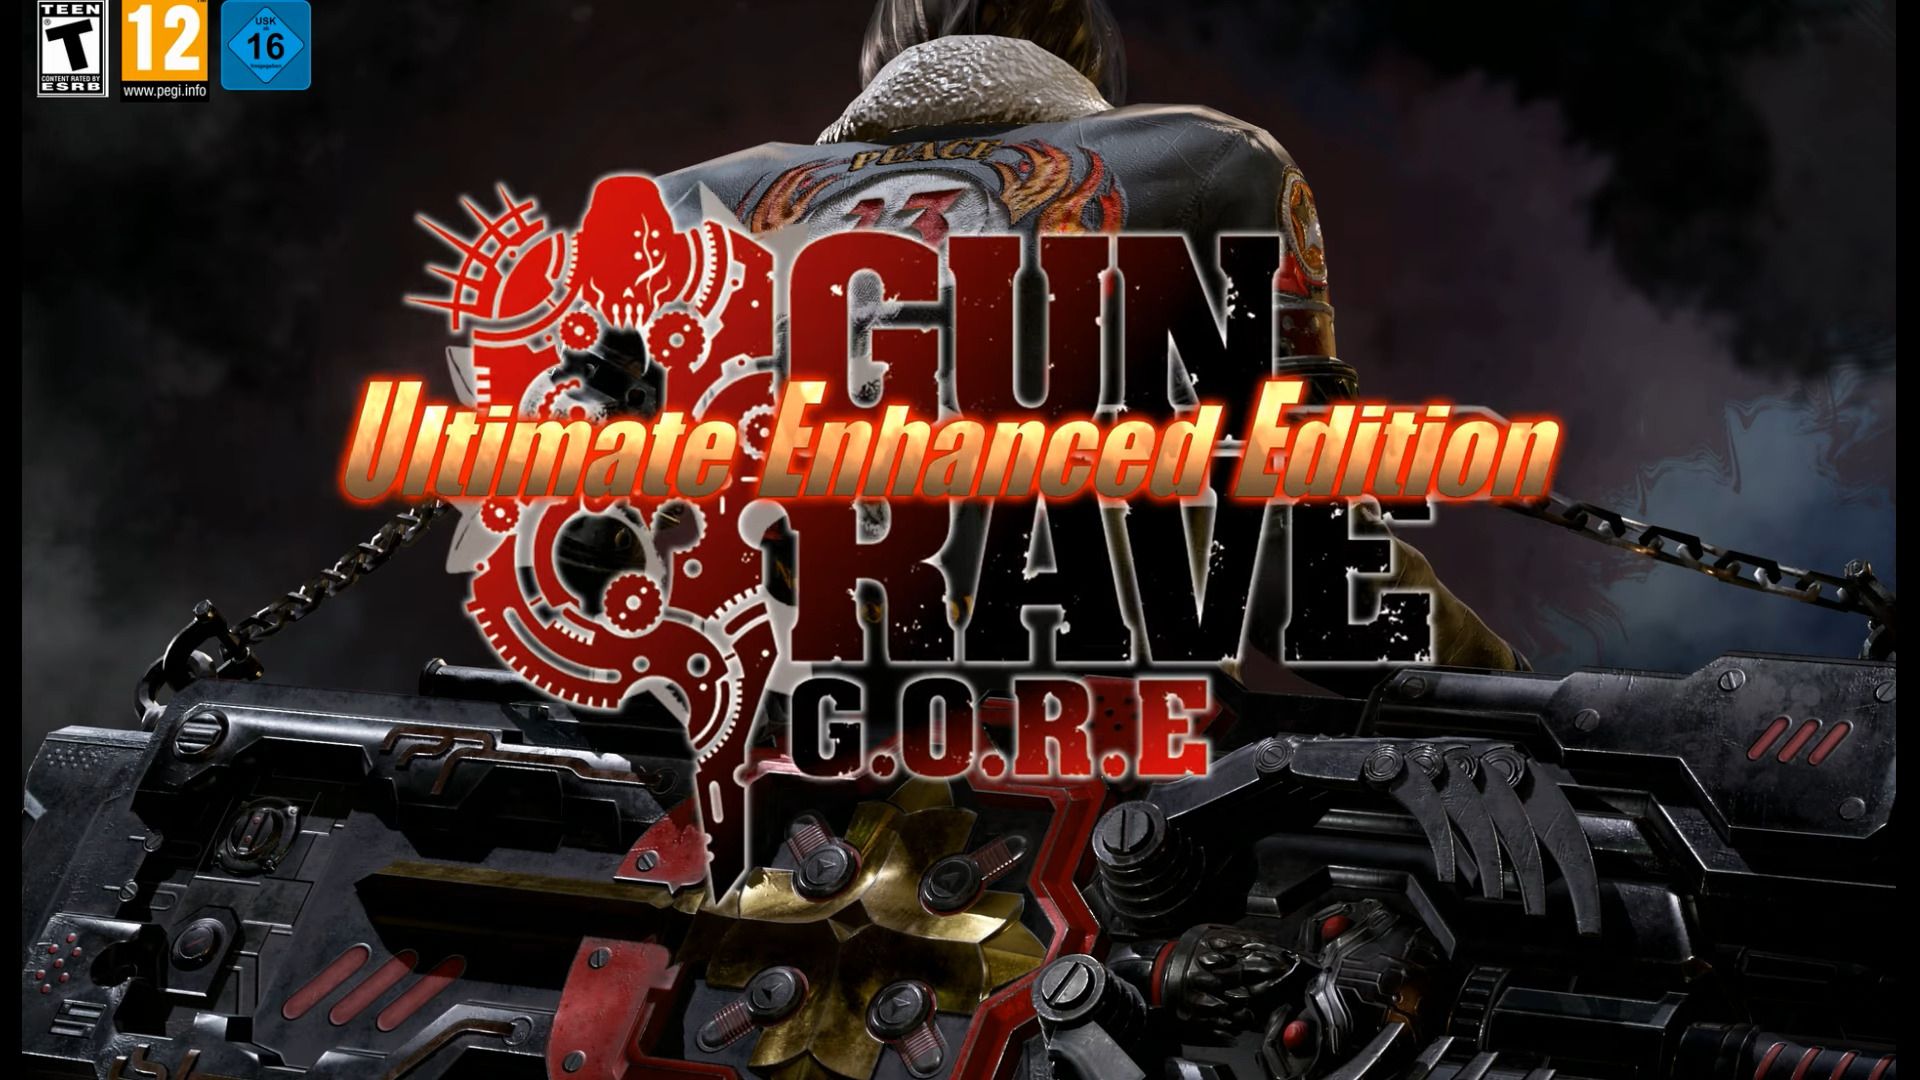 #Gungrave G.O.R.E erscheint in neuer Ultimate Enhanced Edition für Nintendo Switch